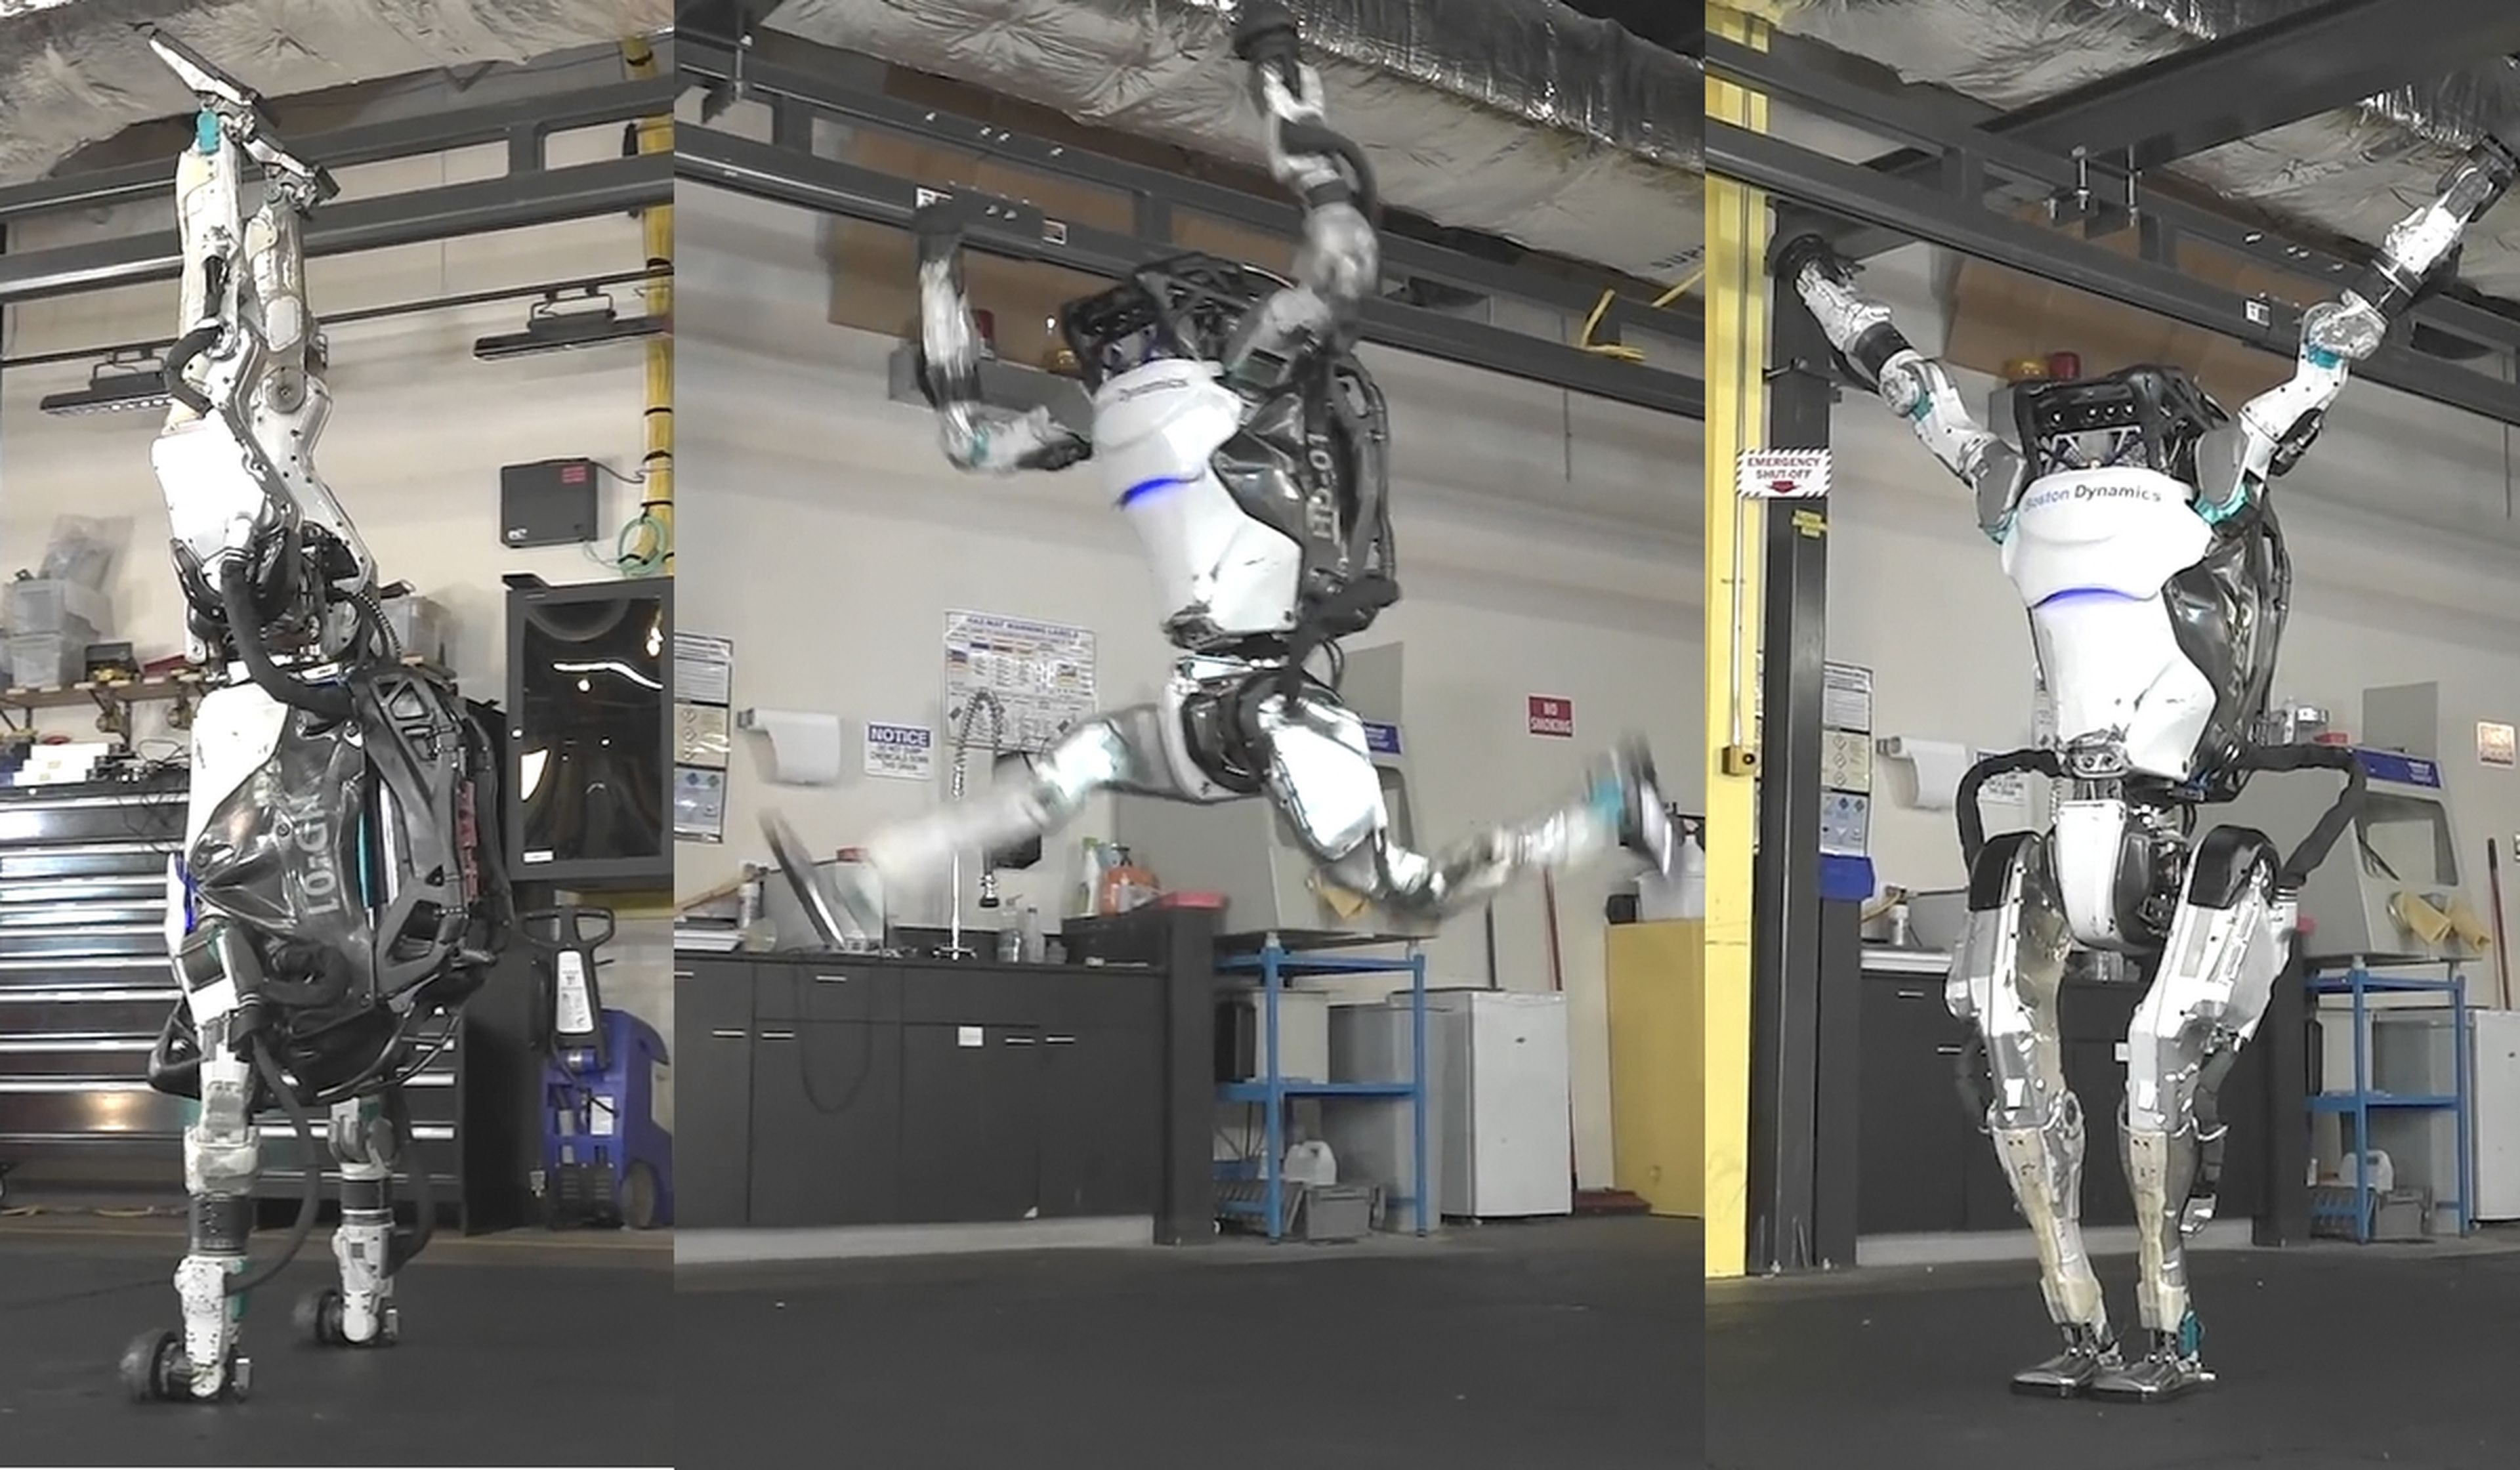 El robot de Boston Dynamics ahora practica gimnasia artística y es espectacular